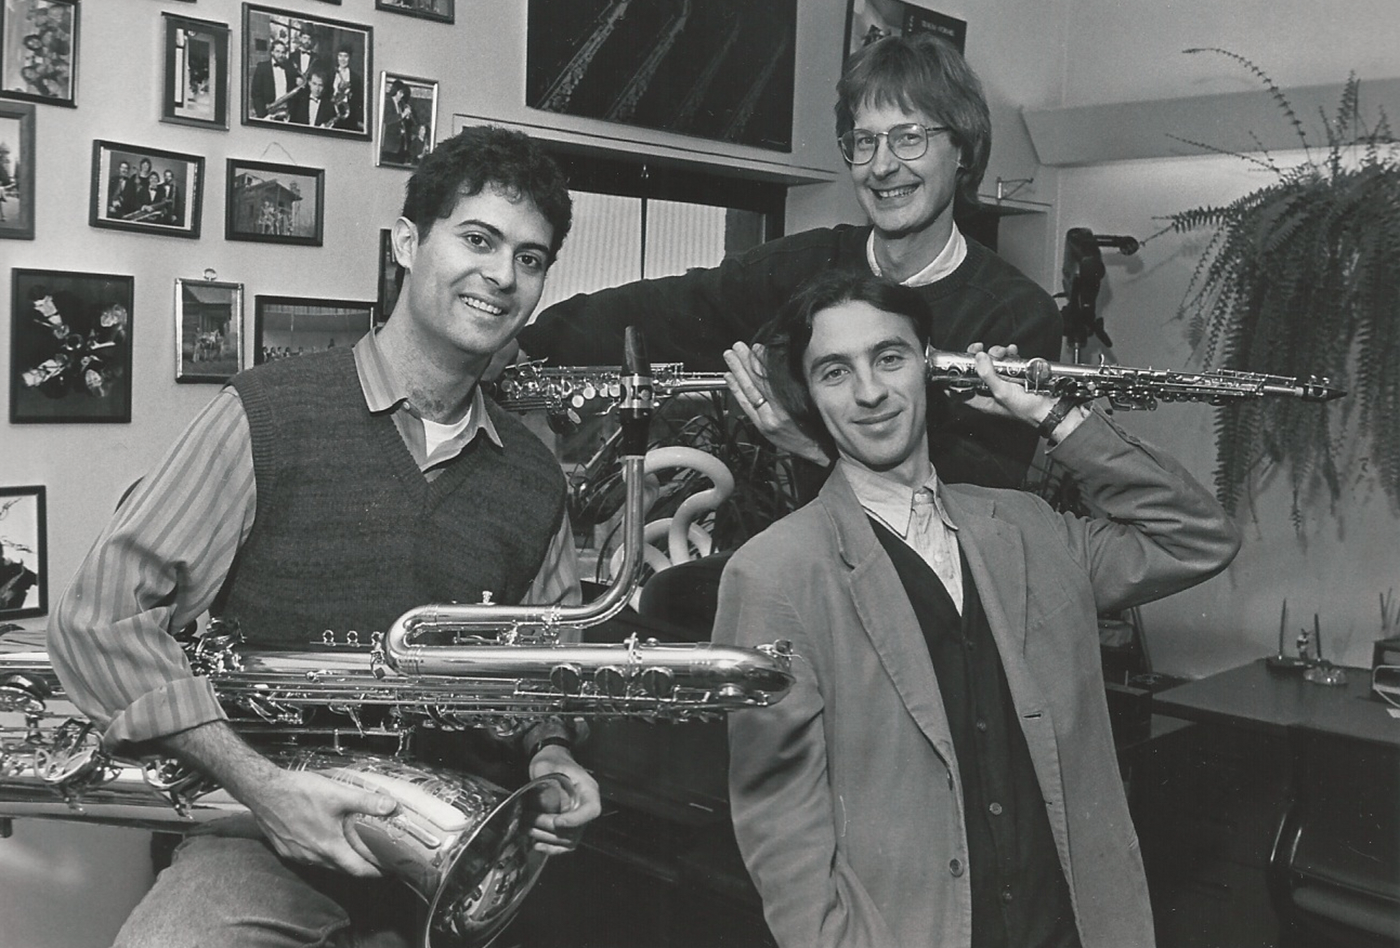 Marco Albonetti, Yiannis Miralis, and John Sampen in 1995